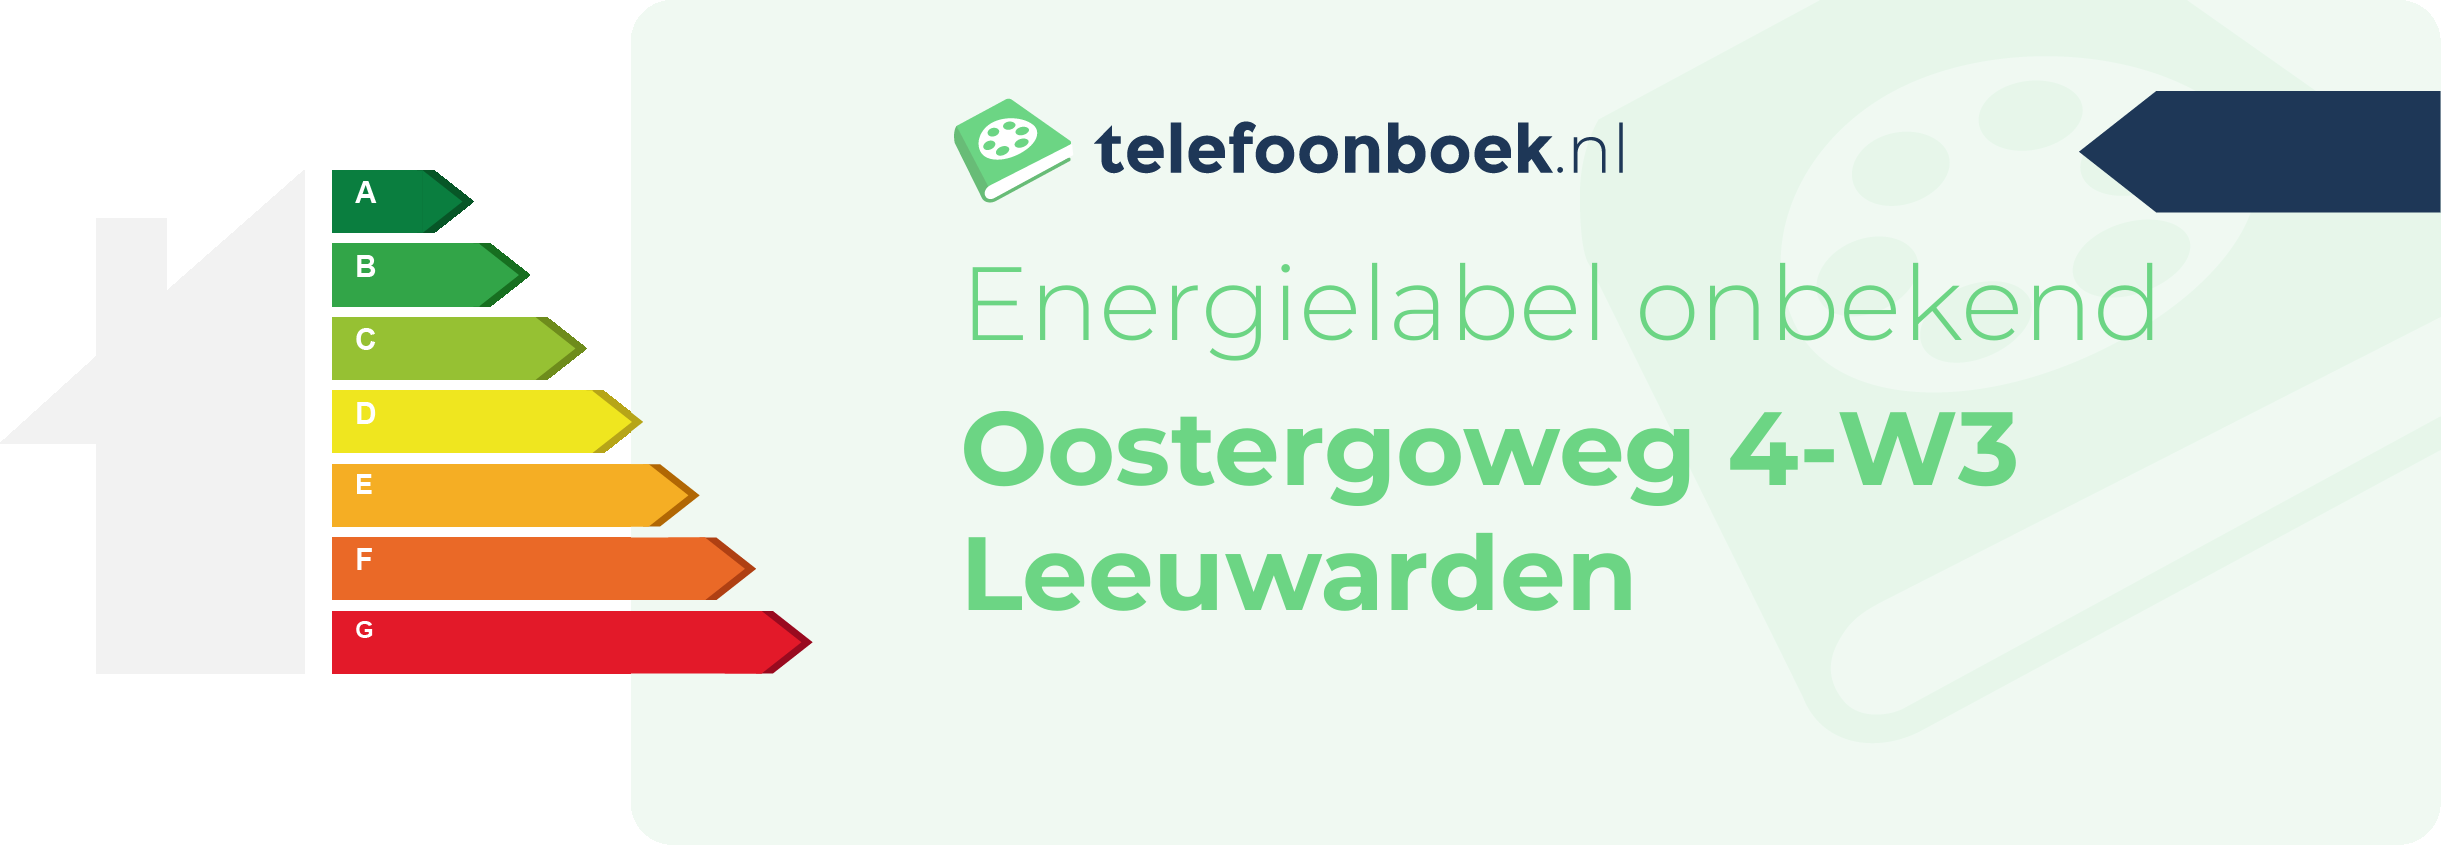 Energielabel Oostergoweg 4-W3 Leeuwarden